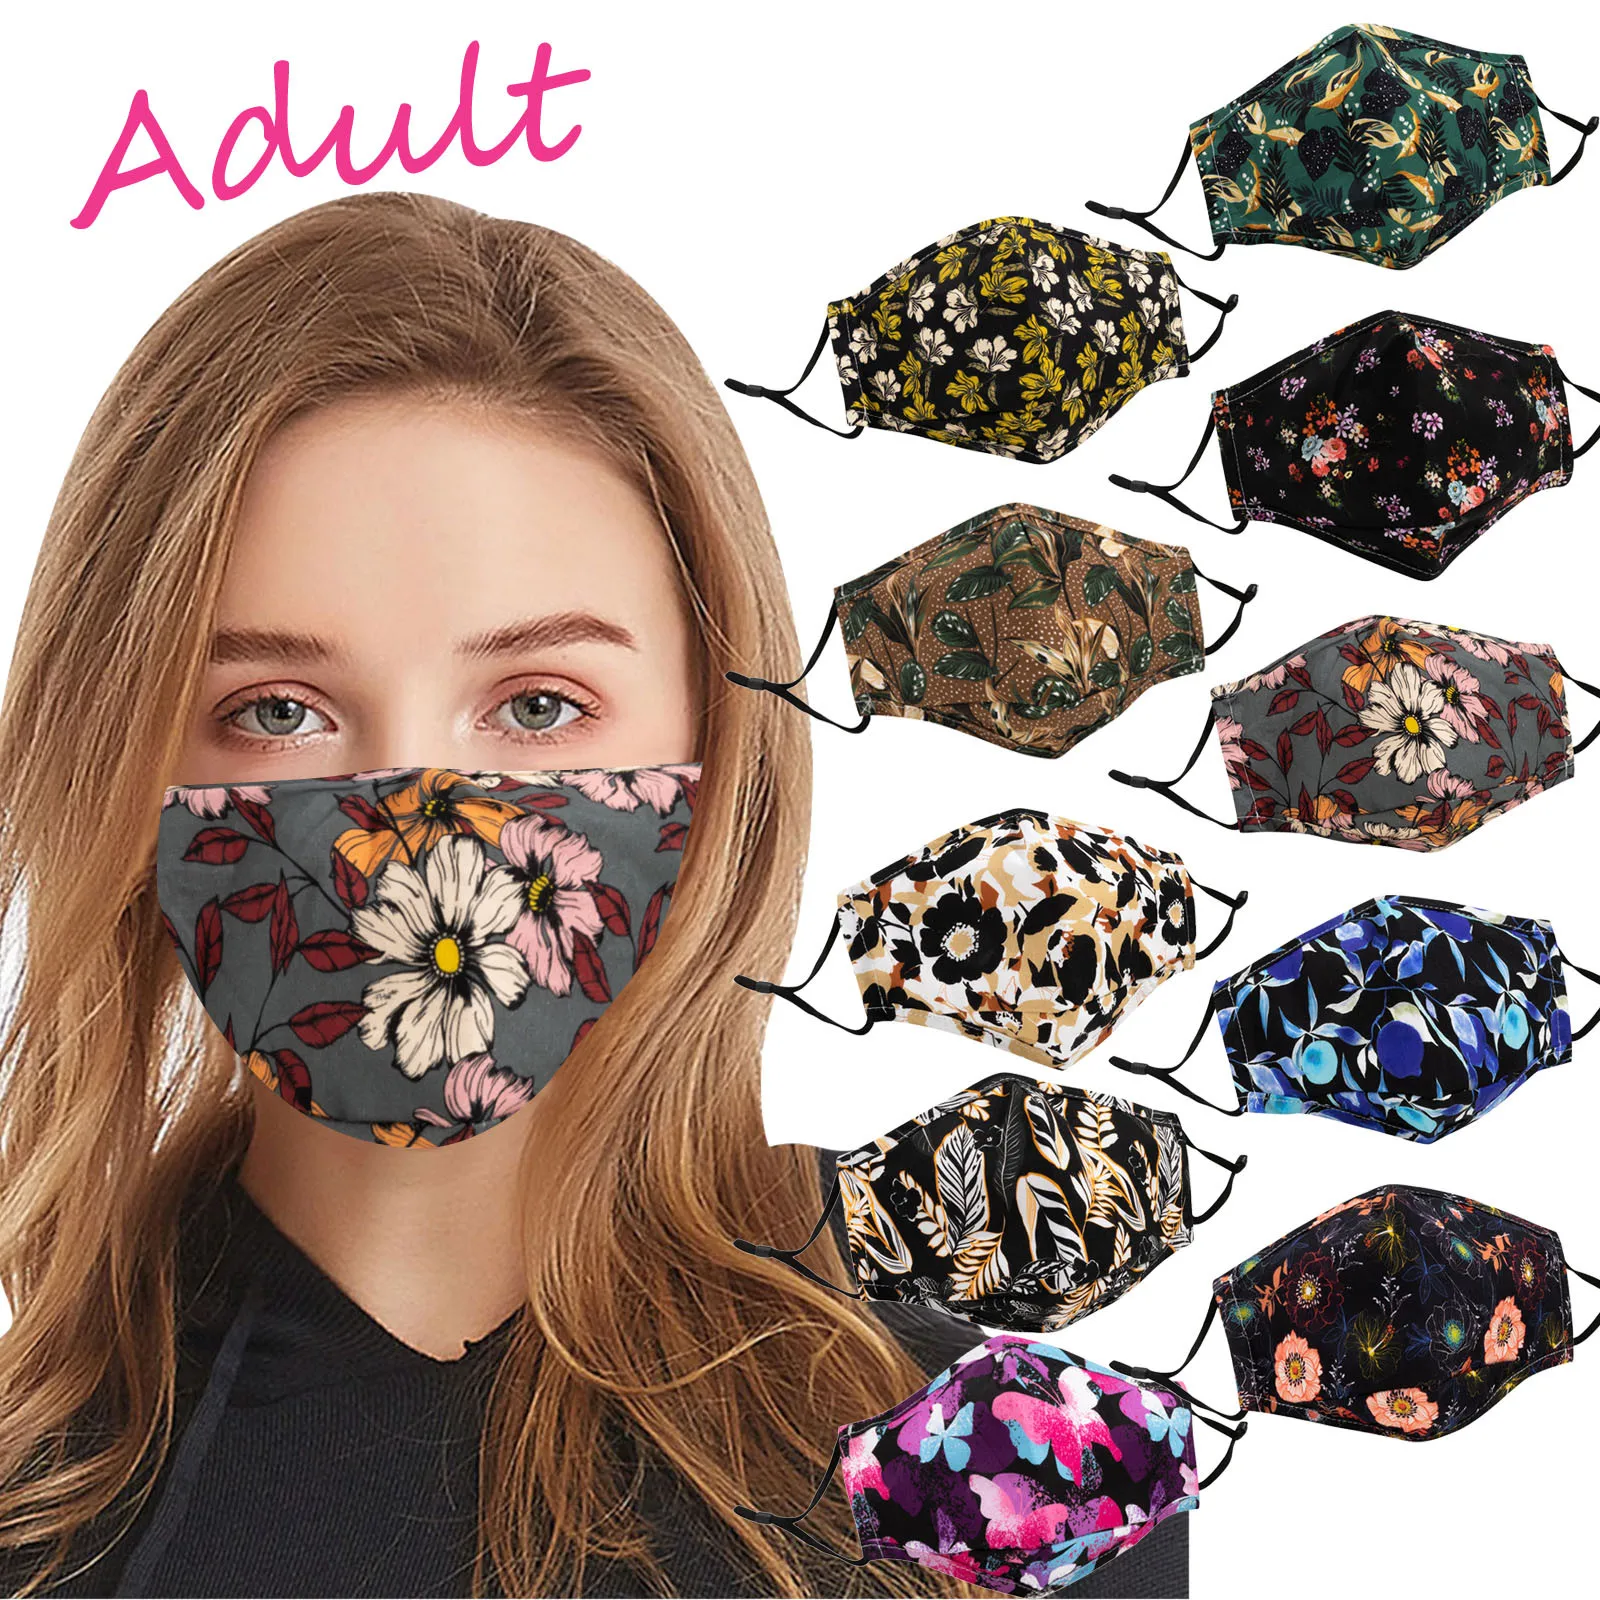 

Adult Floral Print Cloth Cotton Mask With Filter Pocket Adjustable Washable Dustproof Safet Protect Haze Face Mask Mascarilas